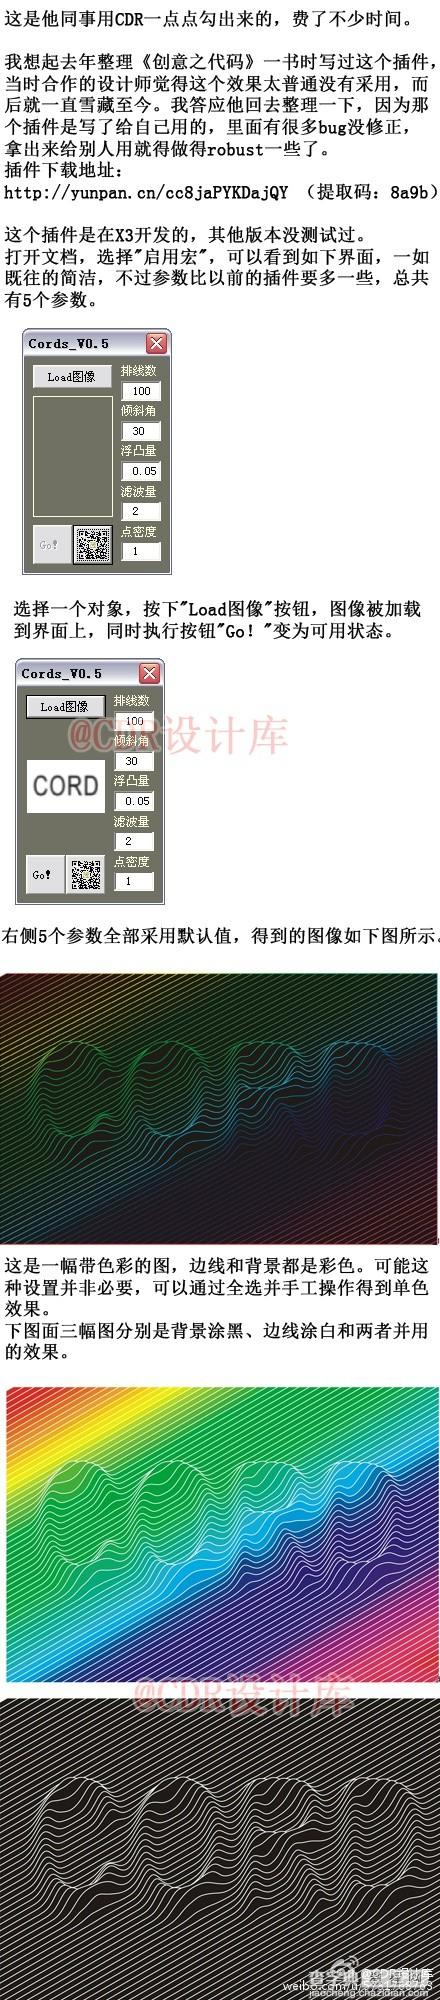 巧用CDR设计伪三维丝弦浮凸效果插件1